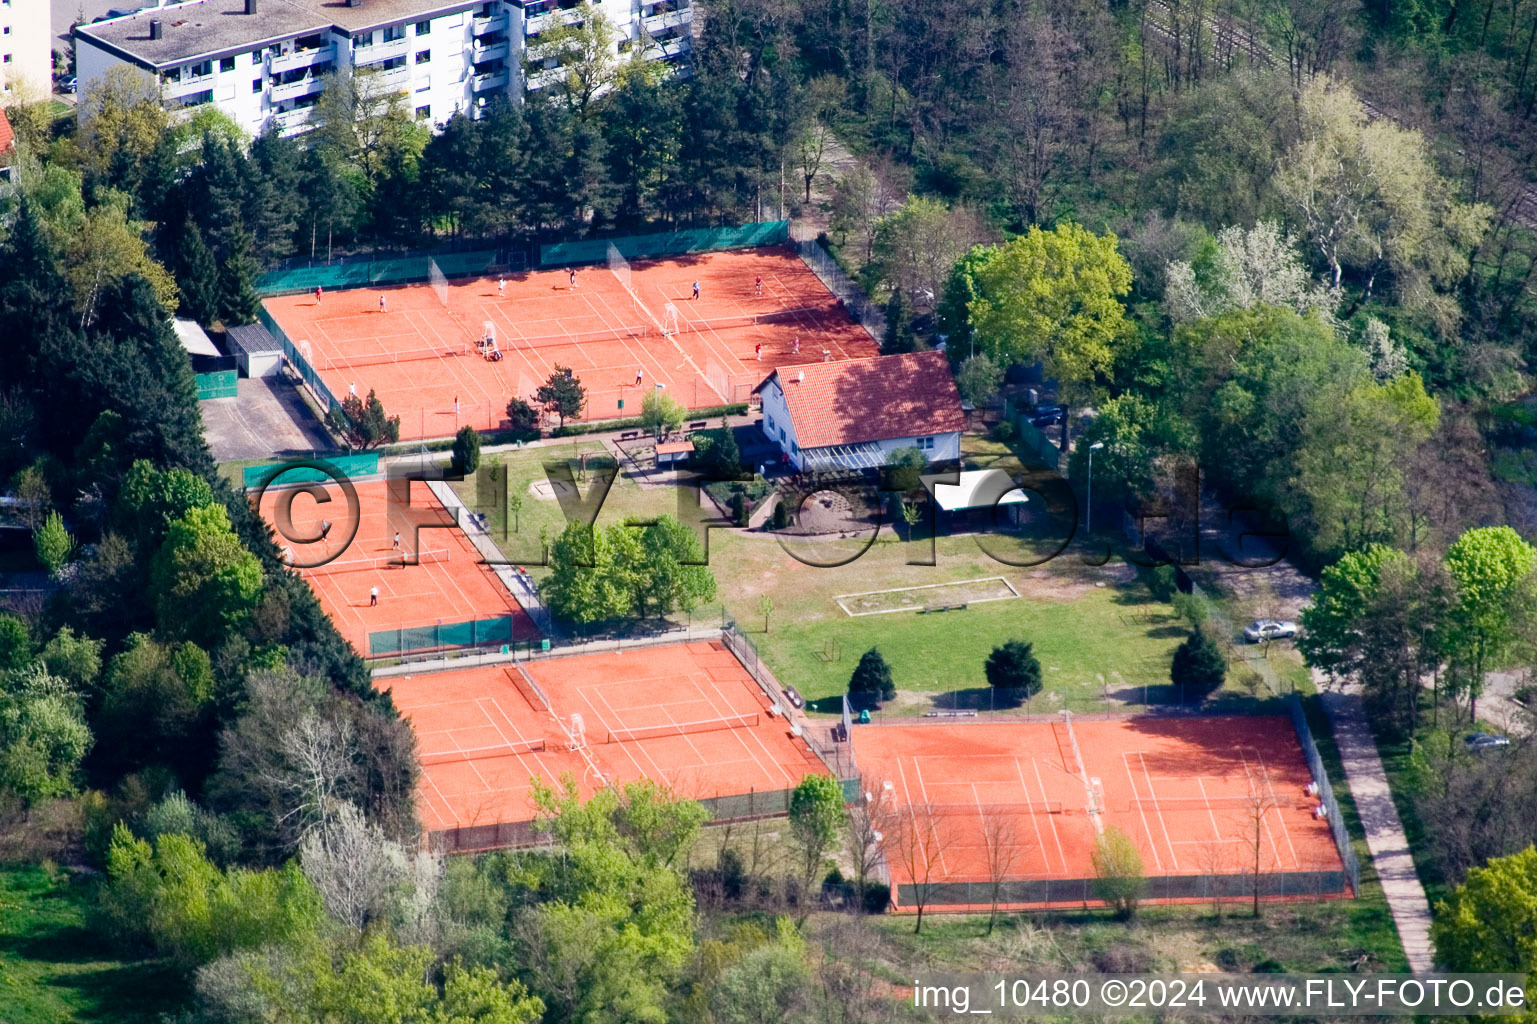 Vue aérienne de Club de tennis à Jockgrim dans le département Rhénanie-Palatinat, Allemagne